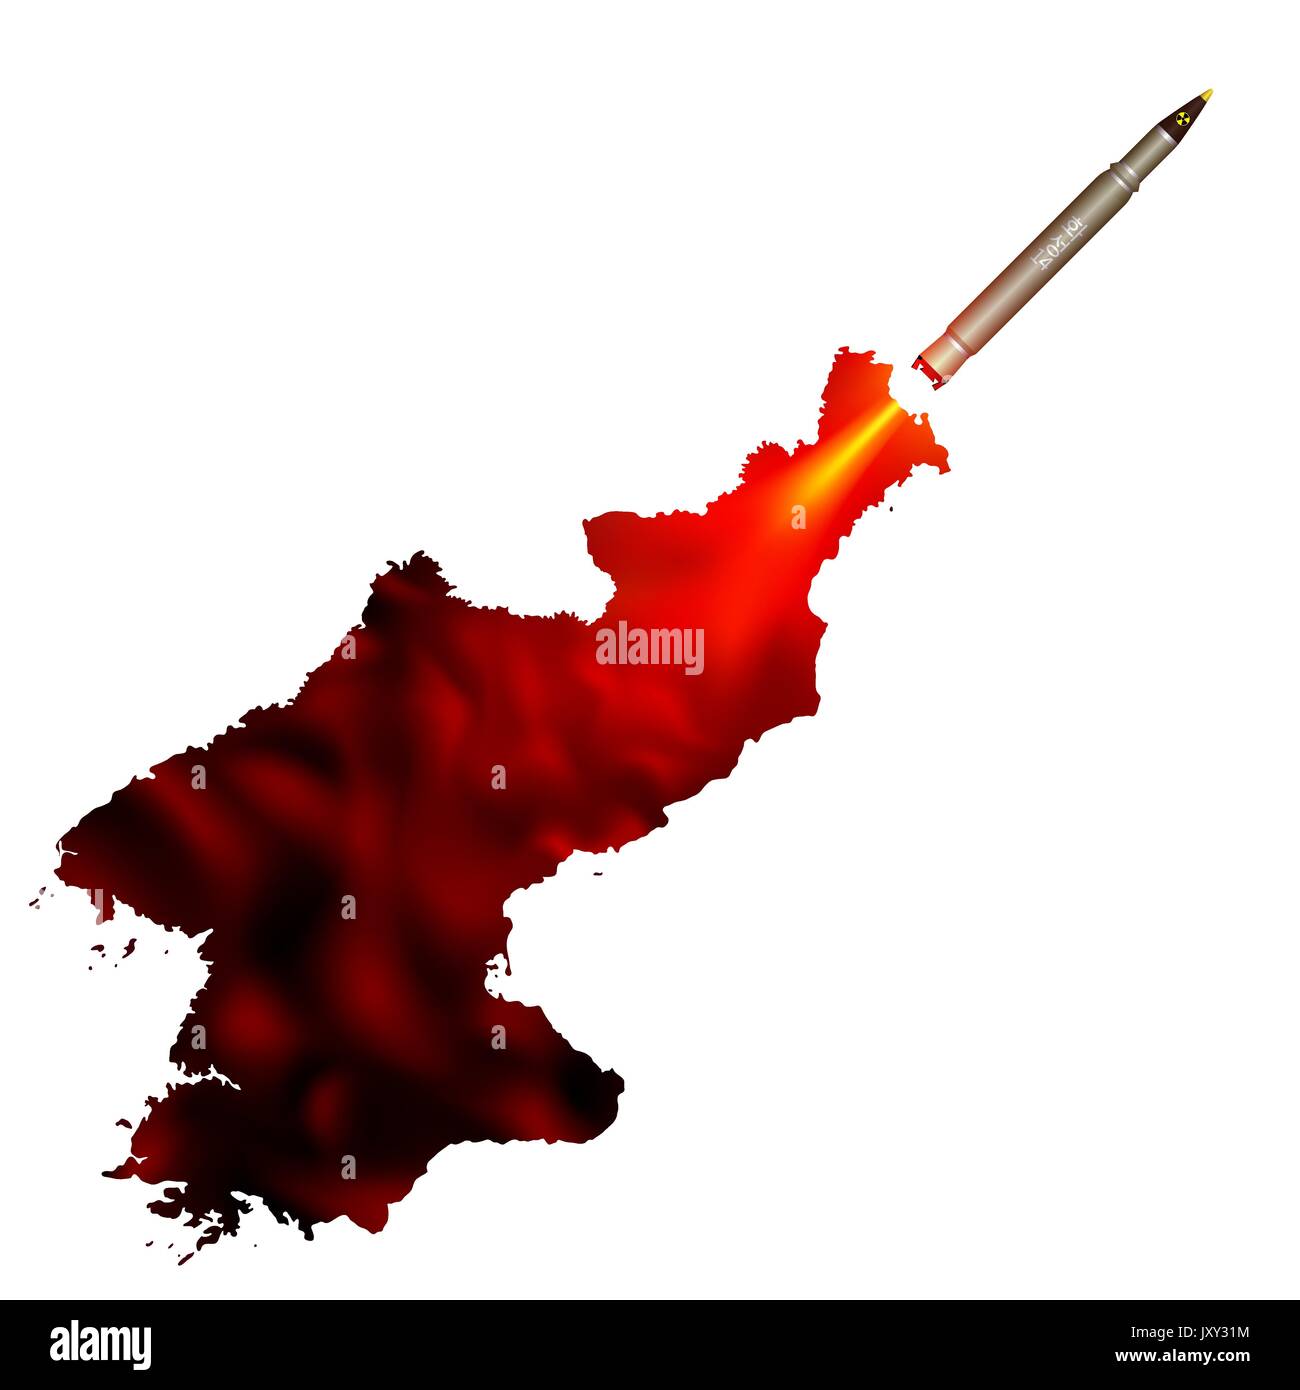 Eine ballistische Atomrakete. Rauchfahne zeichnet die Form eines nordkoreanischen Karte. Politische Kunst gegen eine Provokation der atomaren Weltkrieg. Stock Vektor